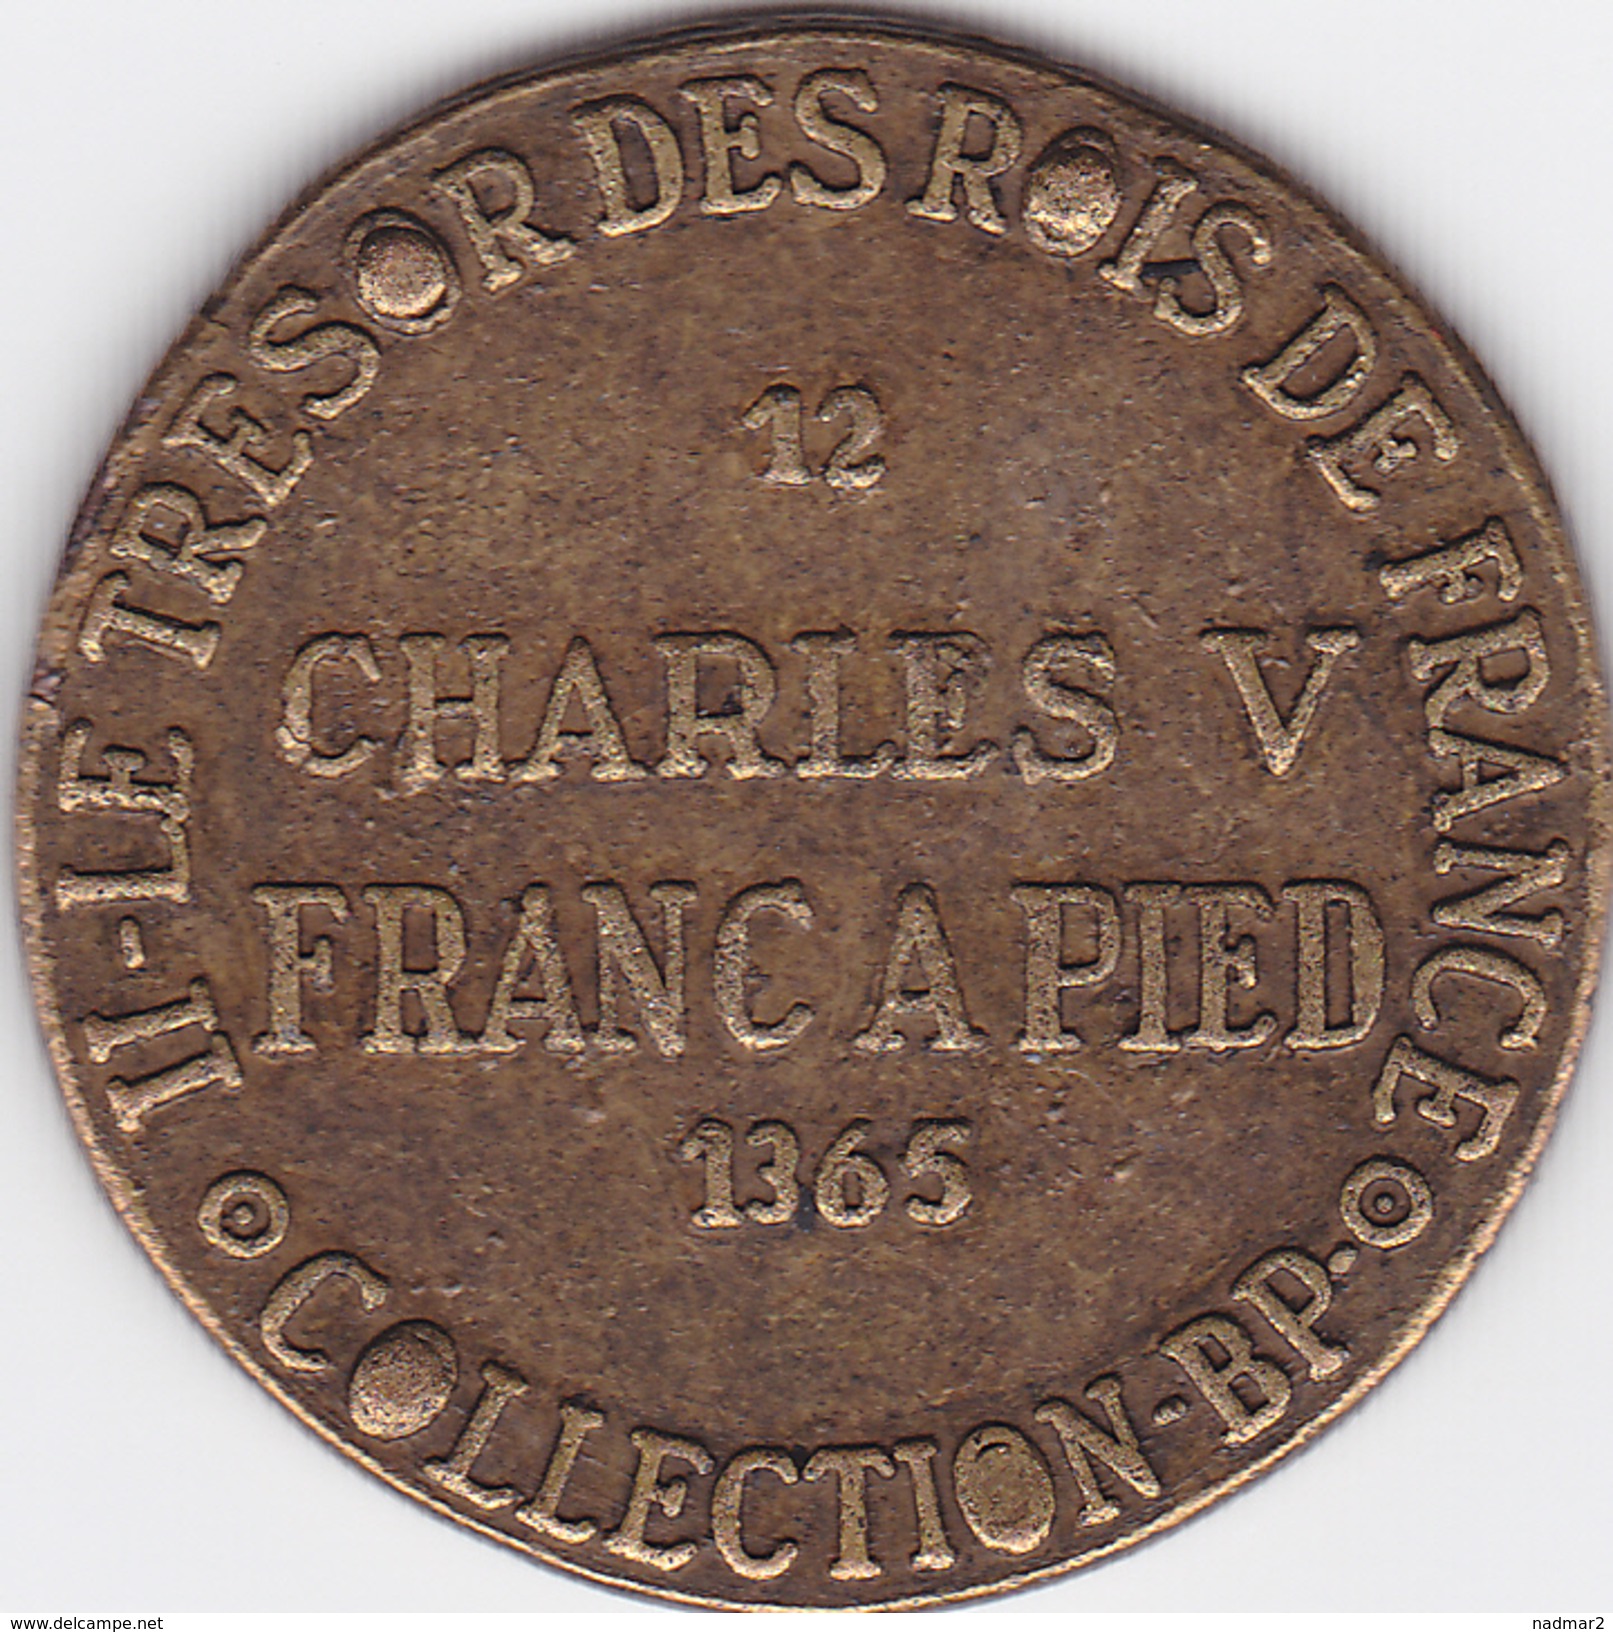 Jeton CHARLES V Franc à Pied 1365 Collection BP Trésor Des Rois De France  5 G TBE Publicité Pièce Monnaie - Royal / Of Nobility